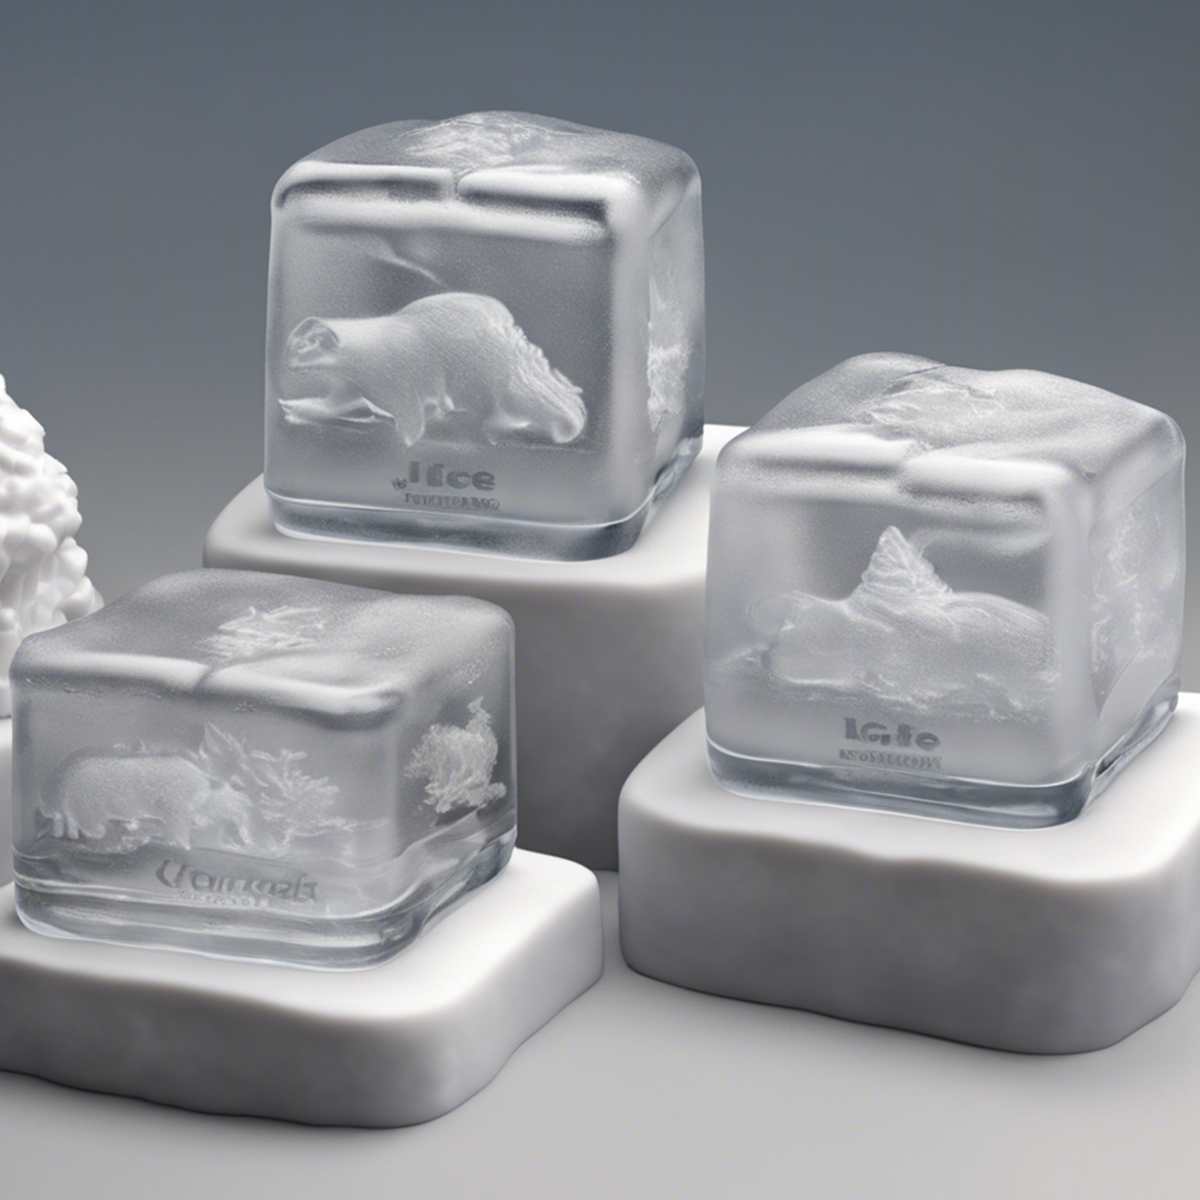 ice molds create custom molds